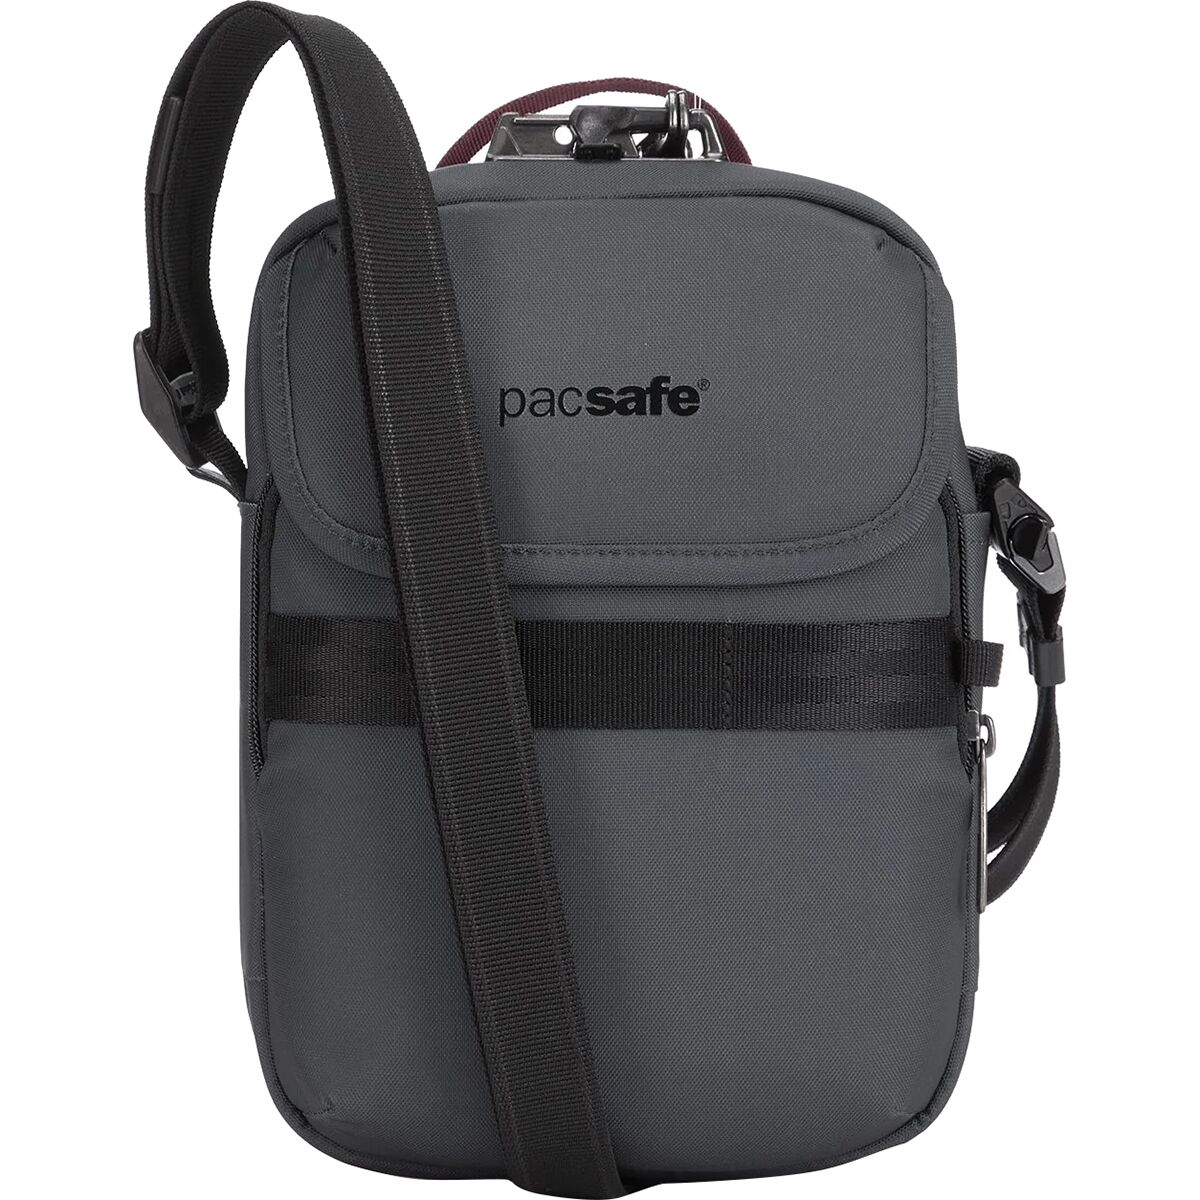 Pacsafe Metrosafe X Compact Crossbody Bag